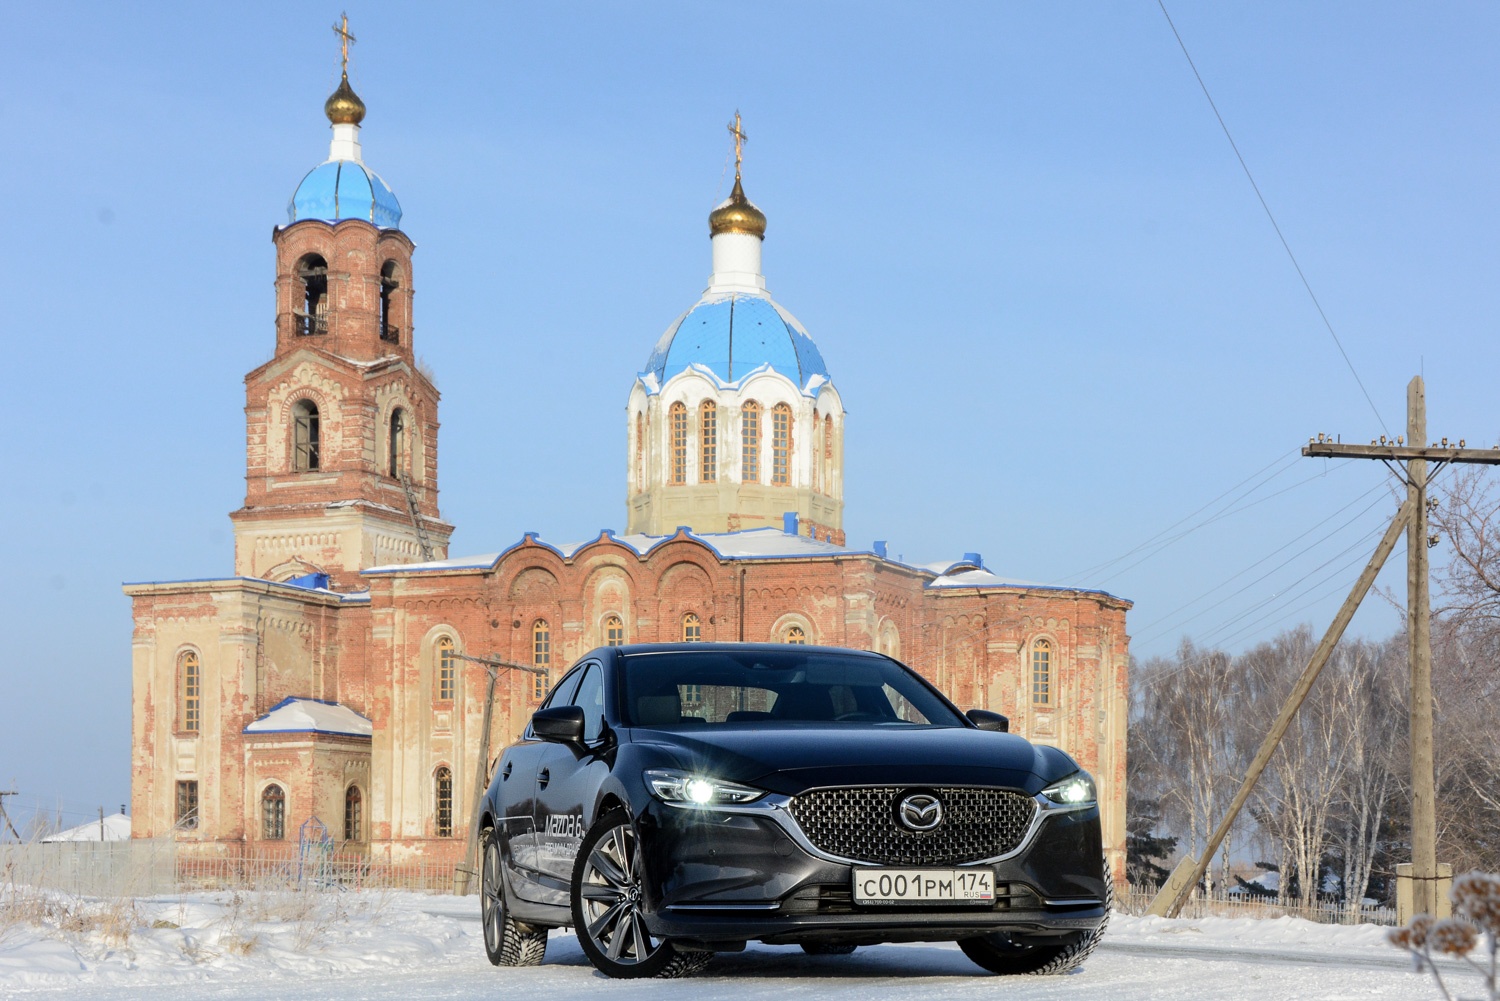 За последний год цена автомобиля прибавила более 150 тысяч рублей: но то же можно сказать и о конкурентах